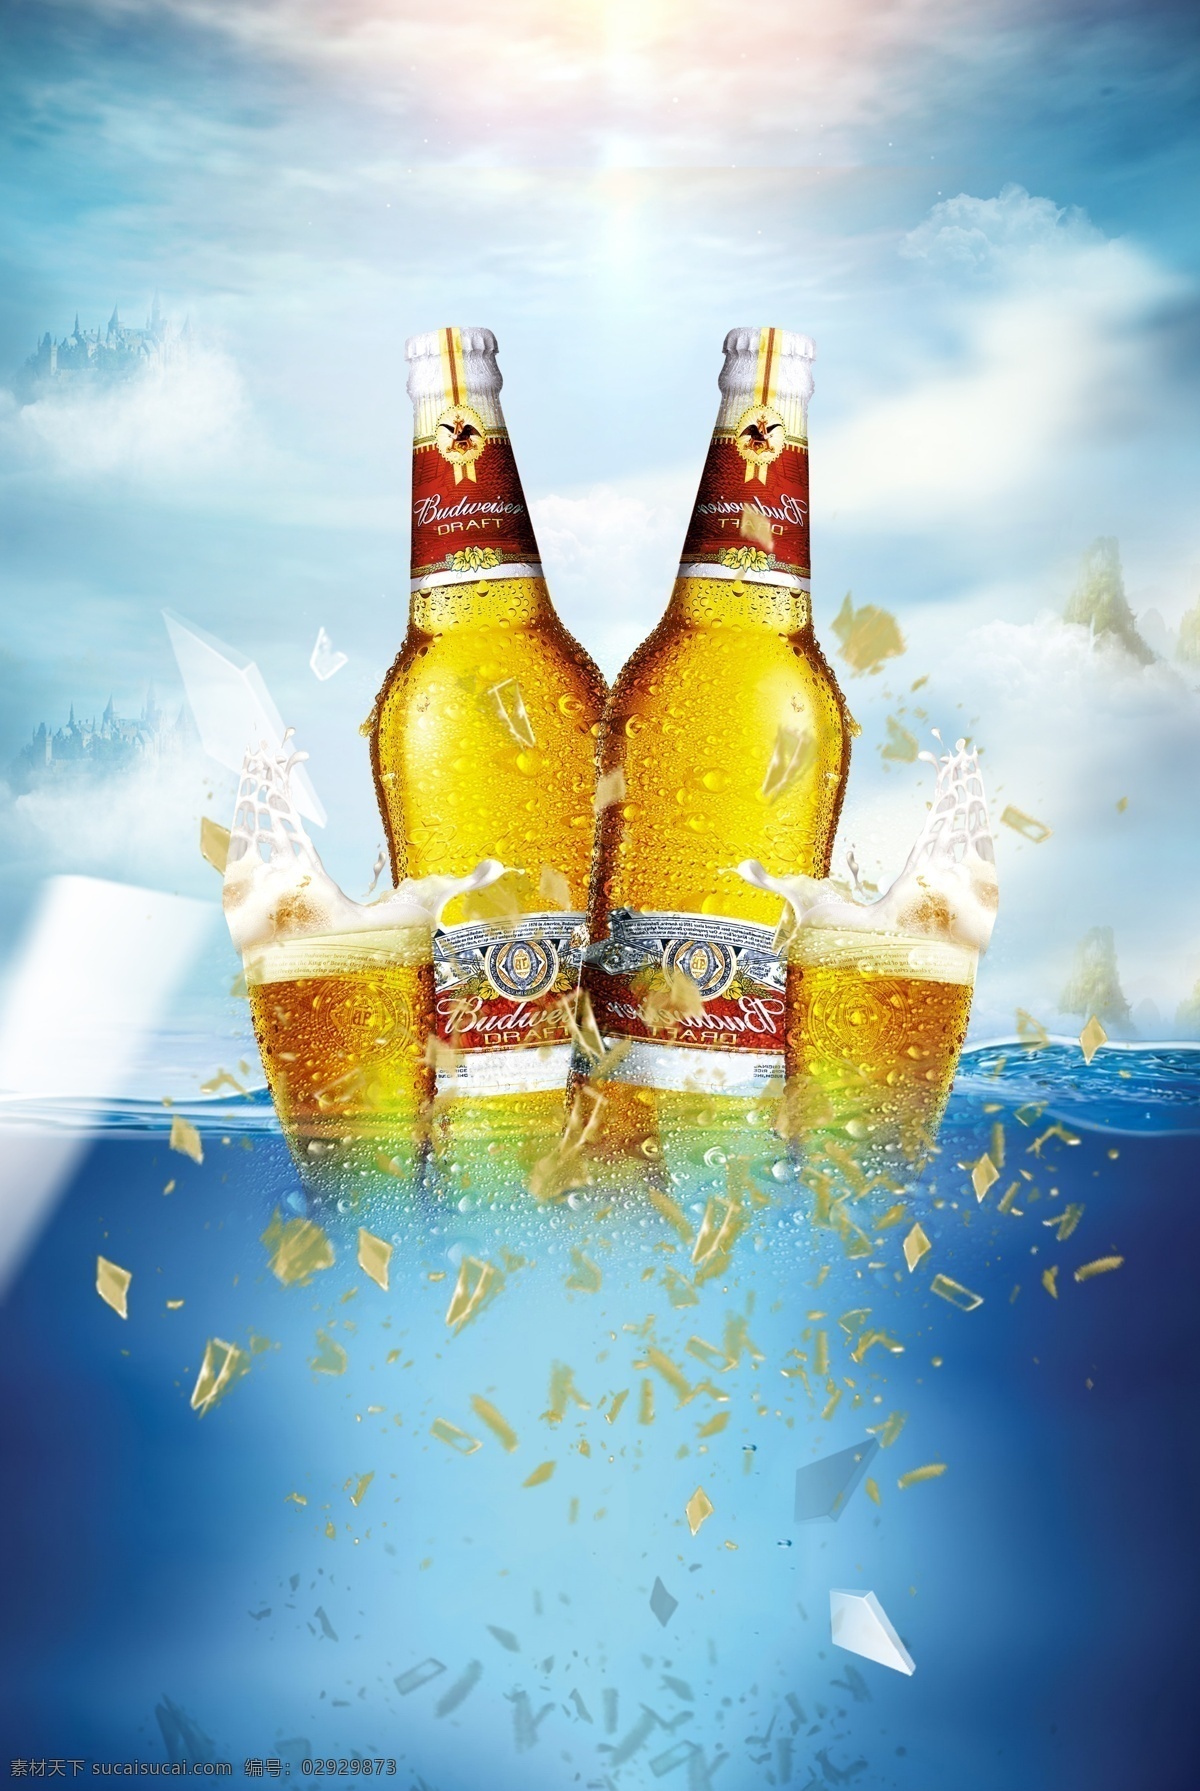 食品 创意 合成 电商 背景 商业 啤酒 漂流 炸裂 碎片 蓝色 海洋